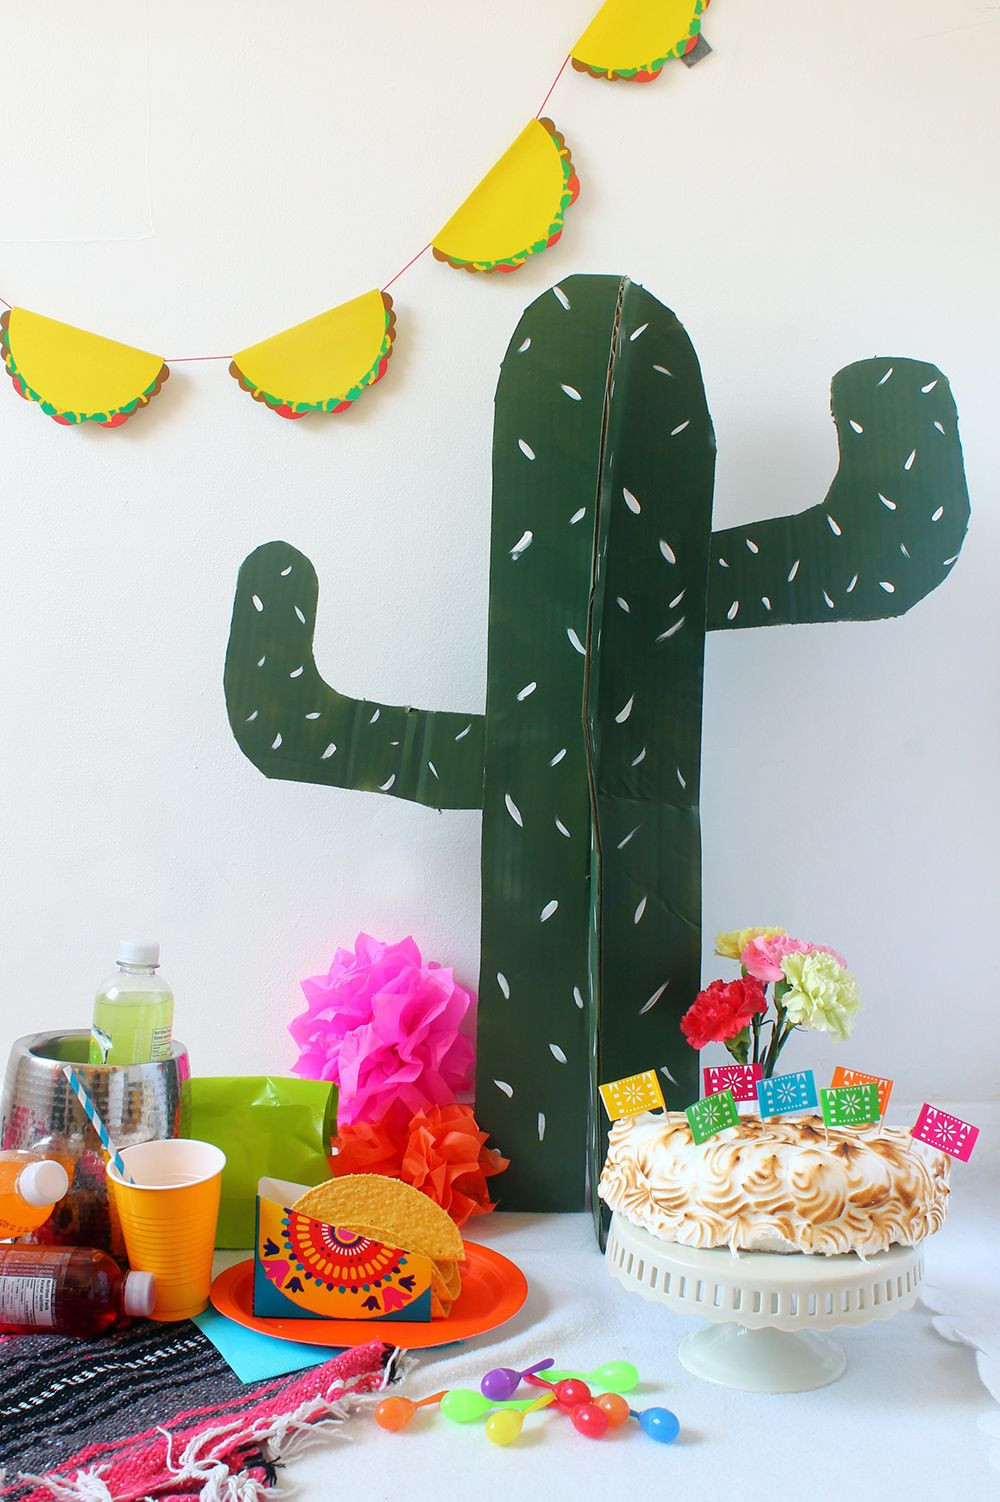 DIY Fiesta Party Decorations
 DIY Entertaining & Party DIY s